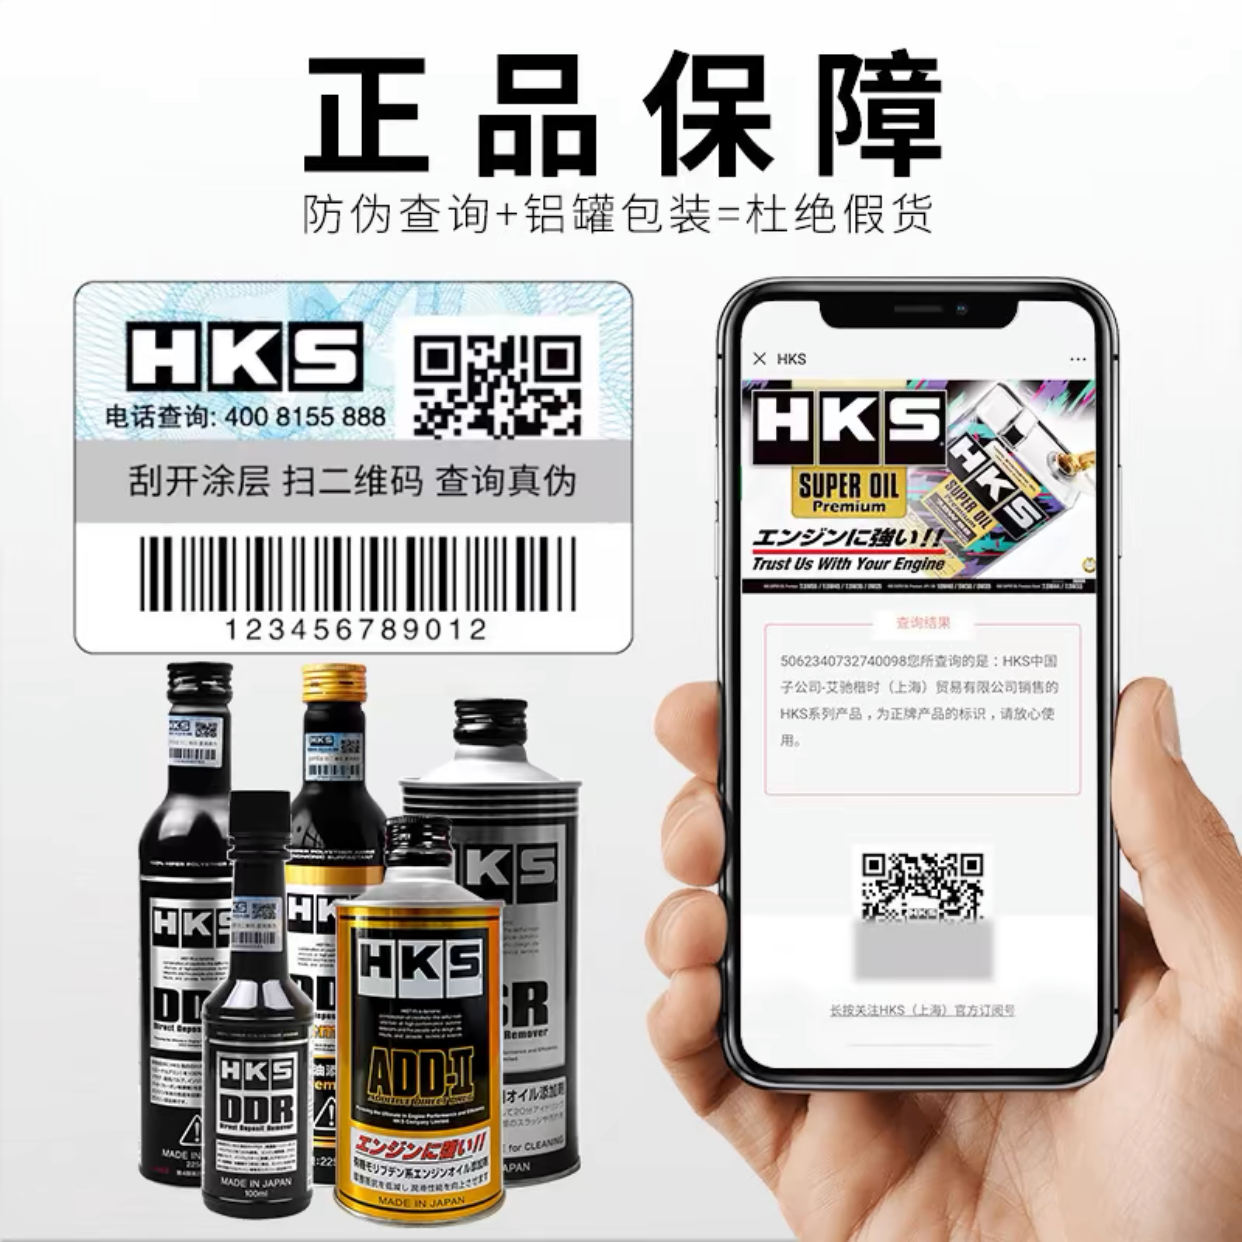 HKS 日本原装进口DHOB动力增强剂汽车燃油辛烷值提升剂汽油添加剂 - 图2